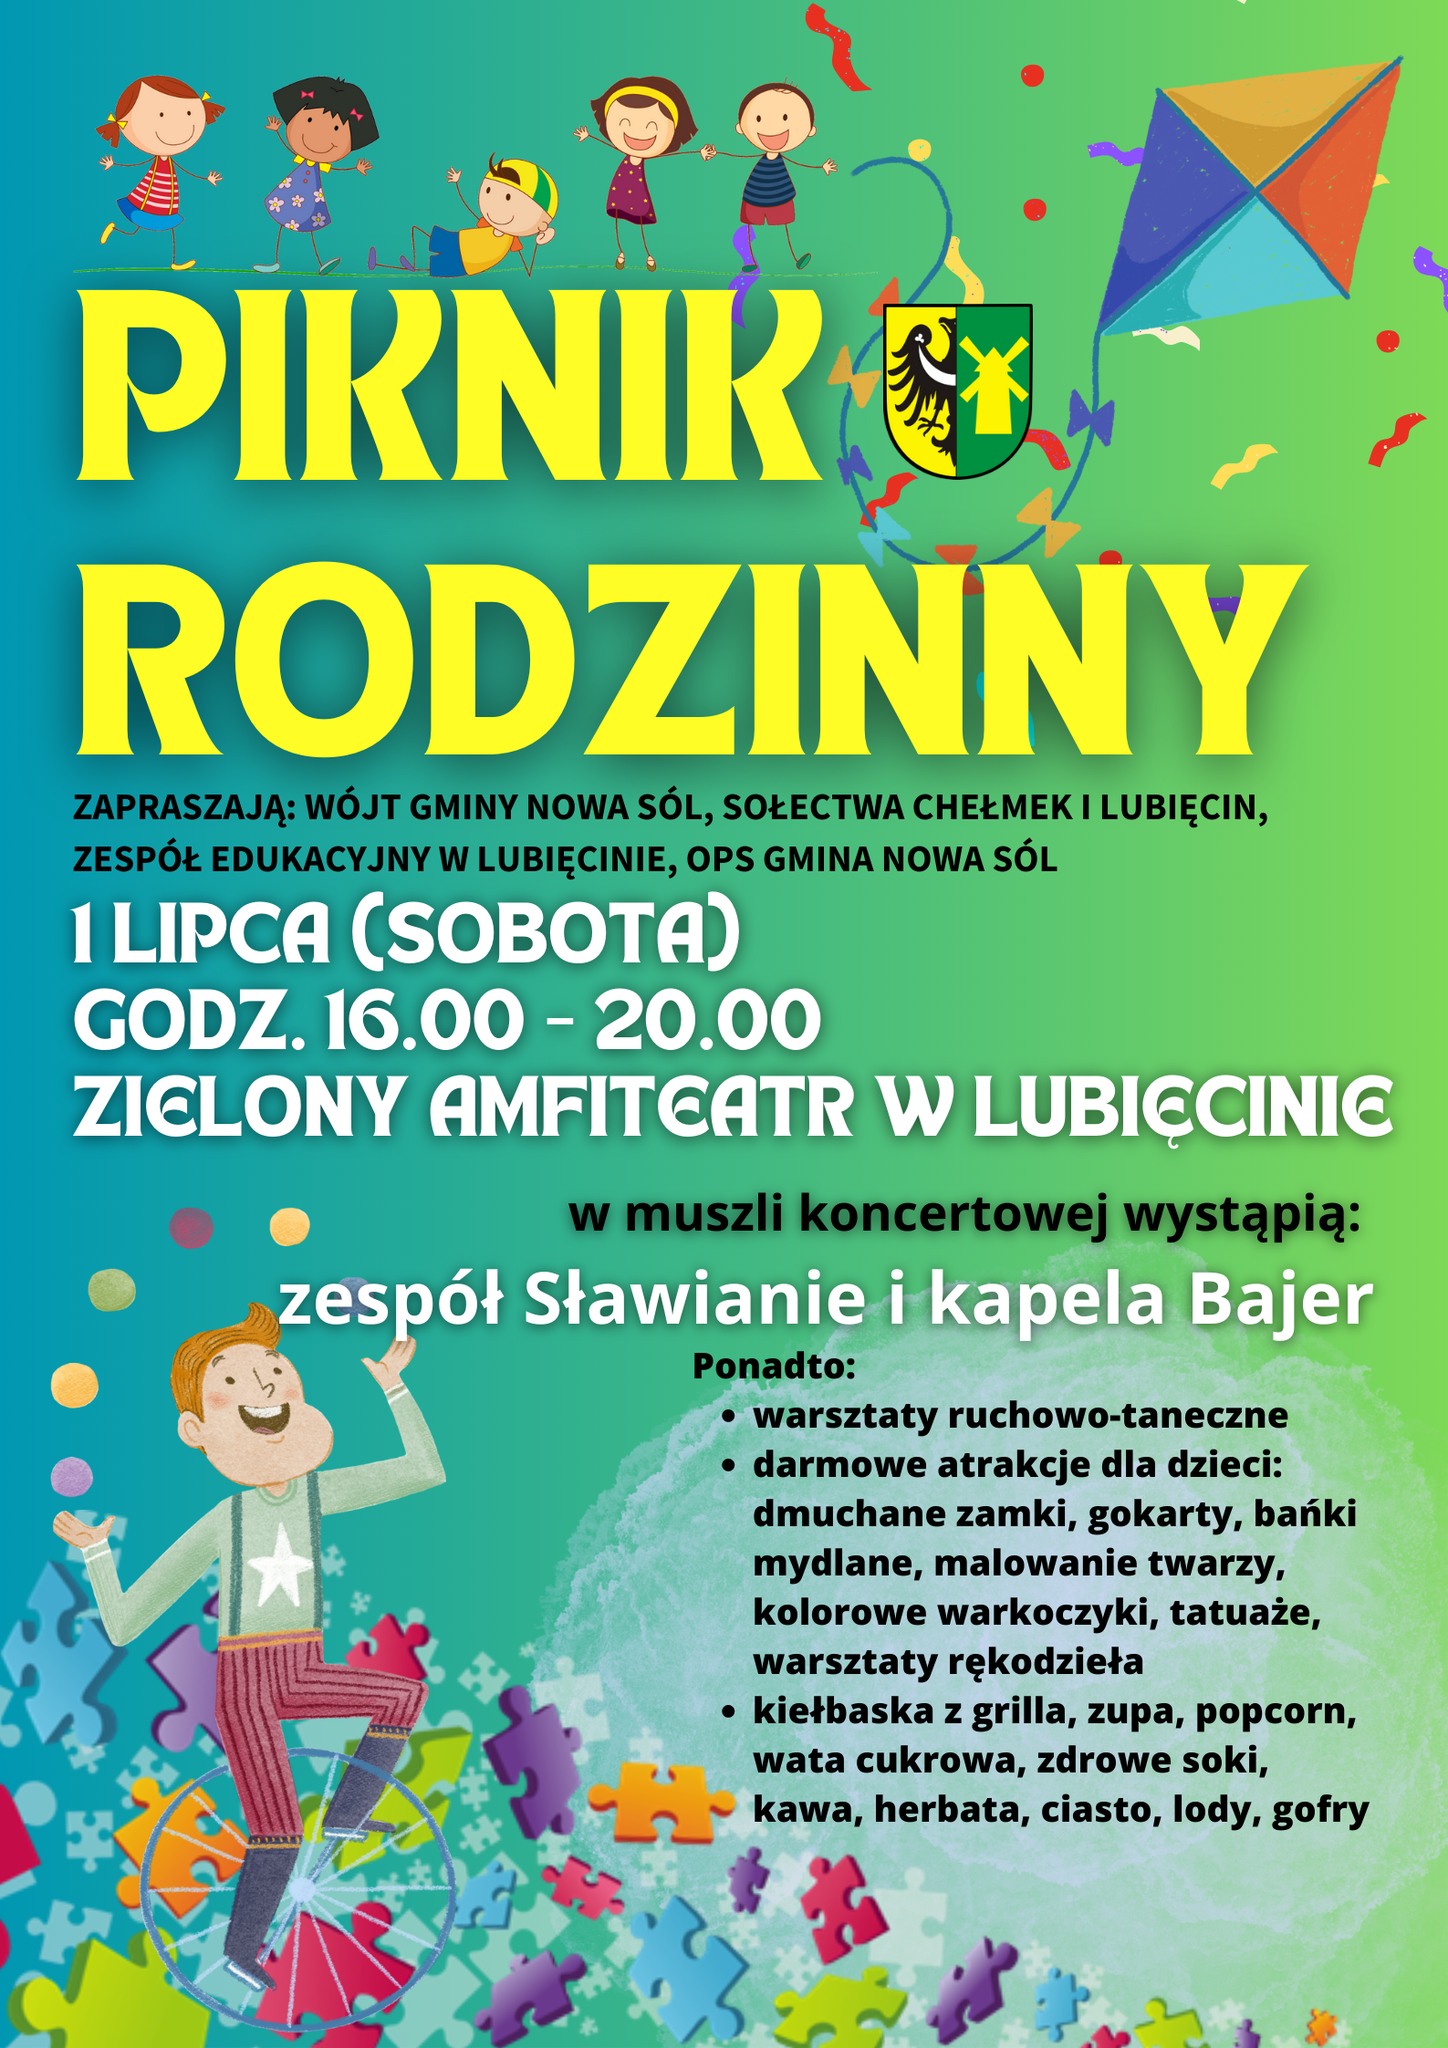 Plakat informujący o Pikniku rodzinnym w Lubięcinie.